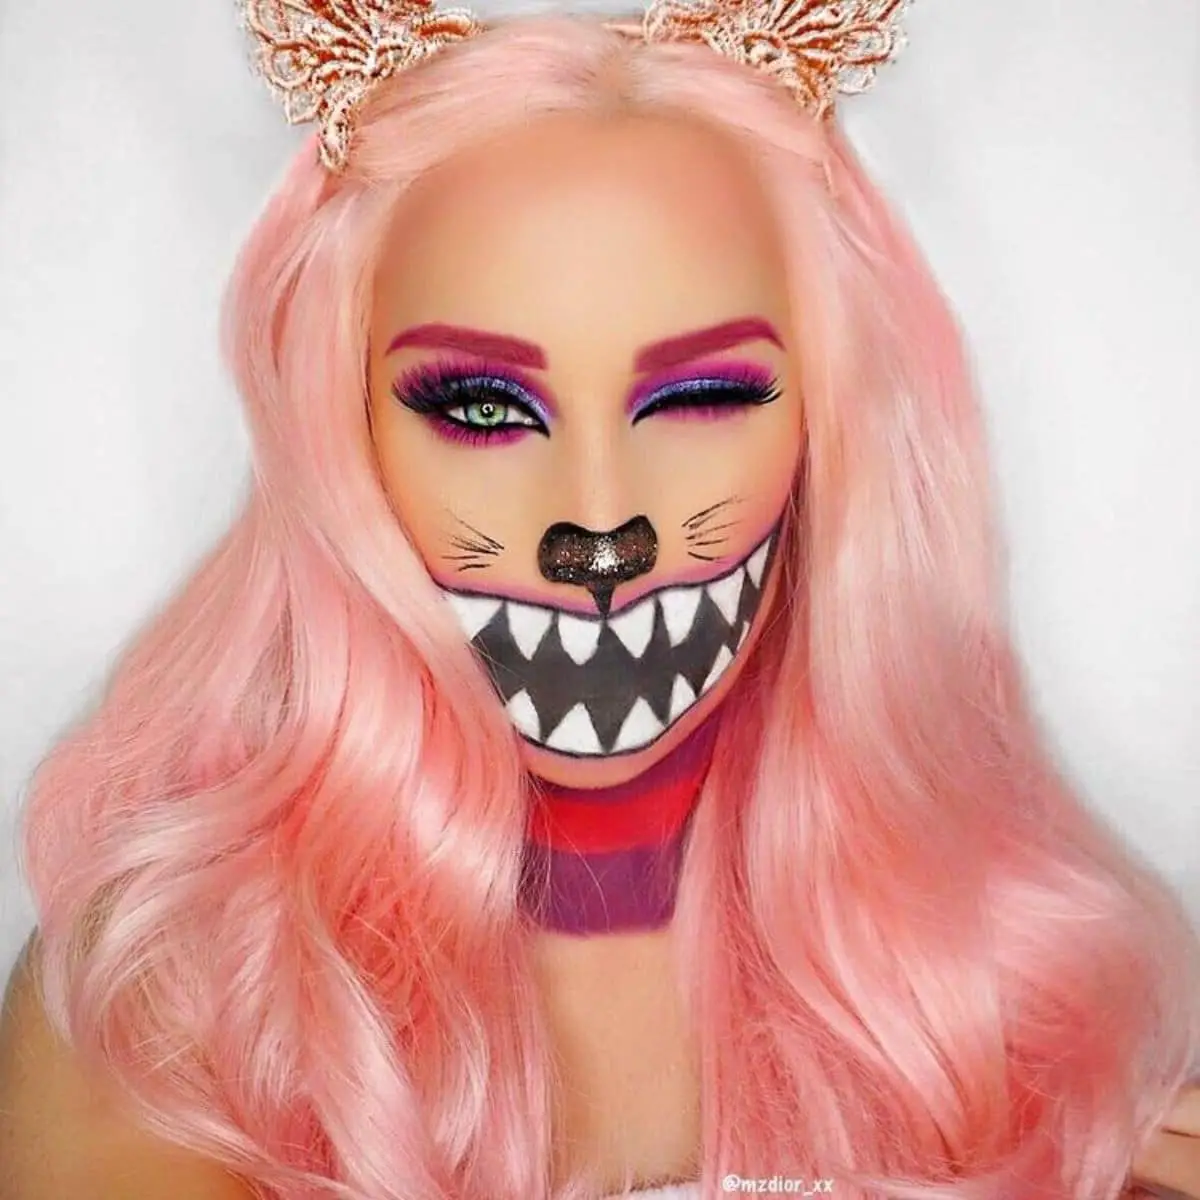  Cheshire Cat makeup